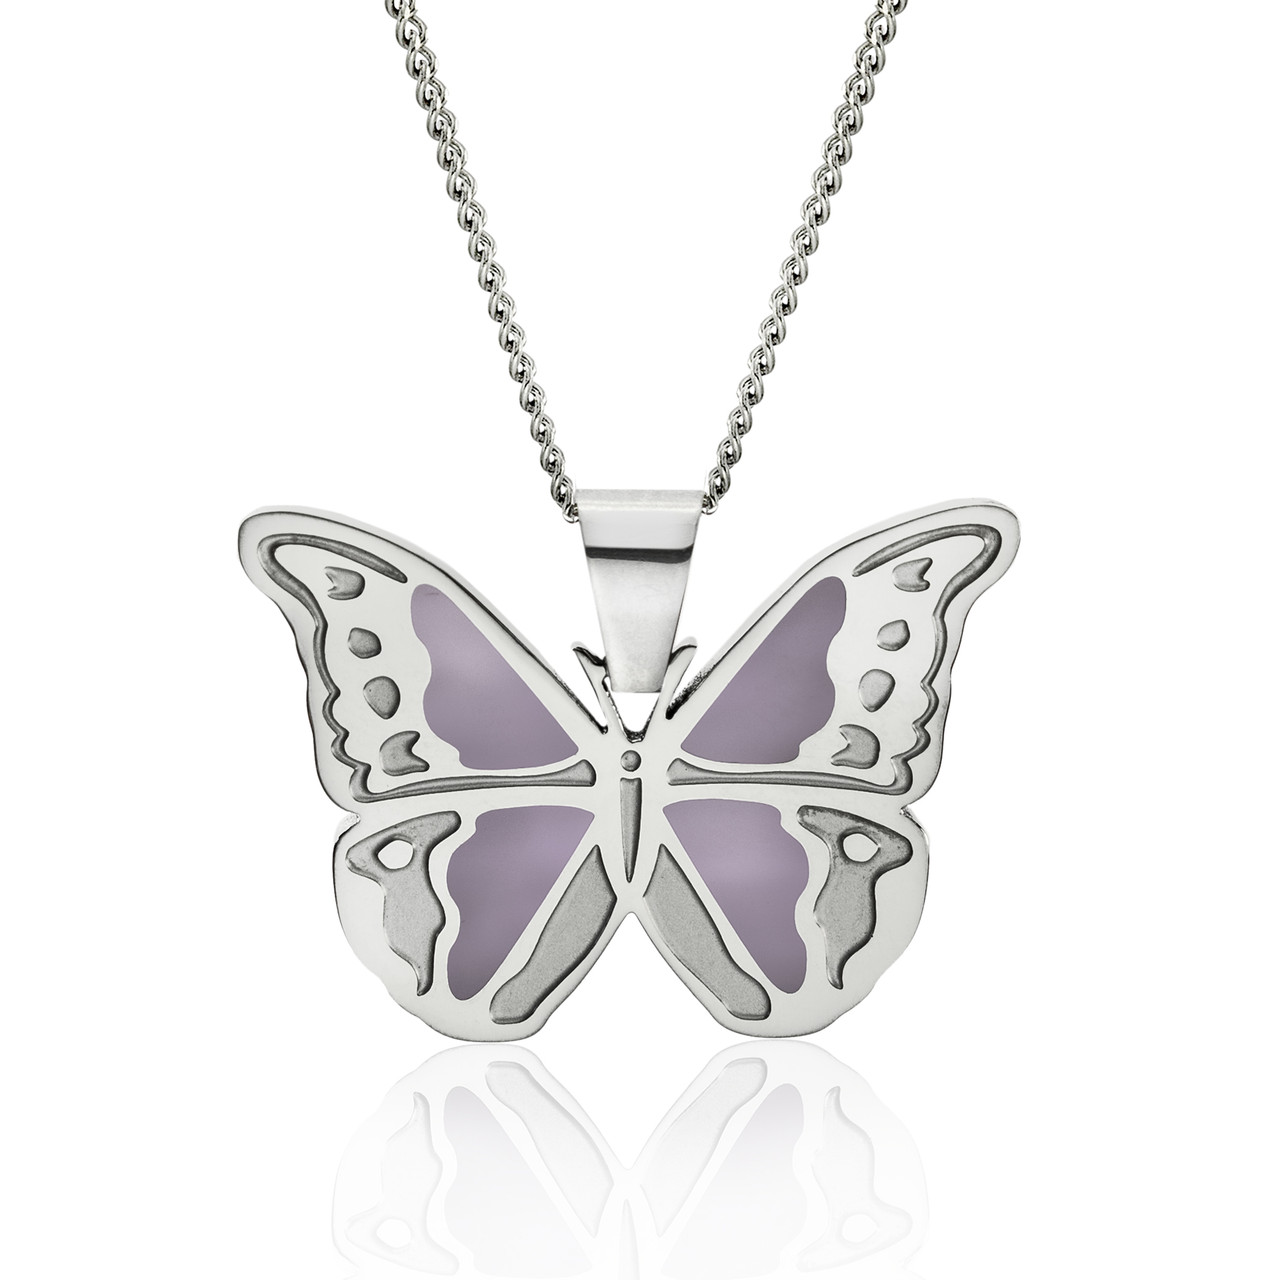 Butterfly Pendant Necklace Black Cord | eBay